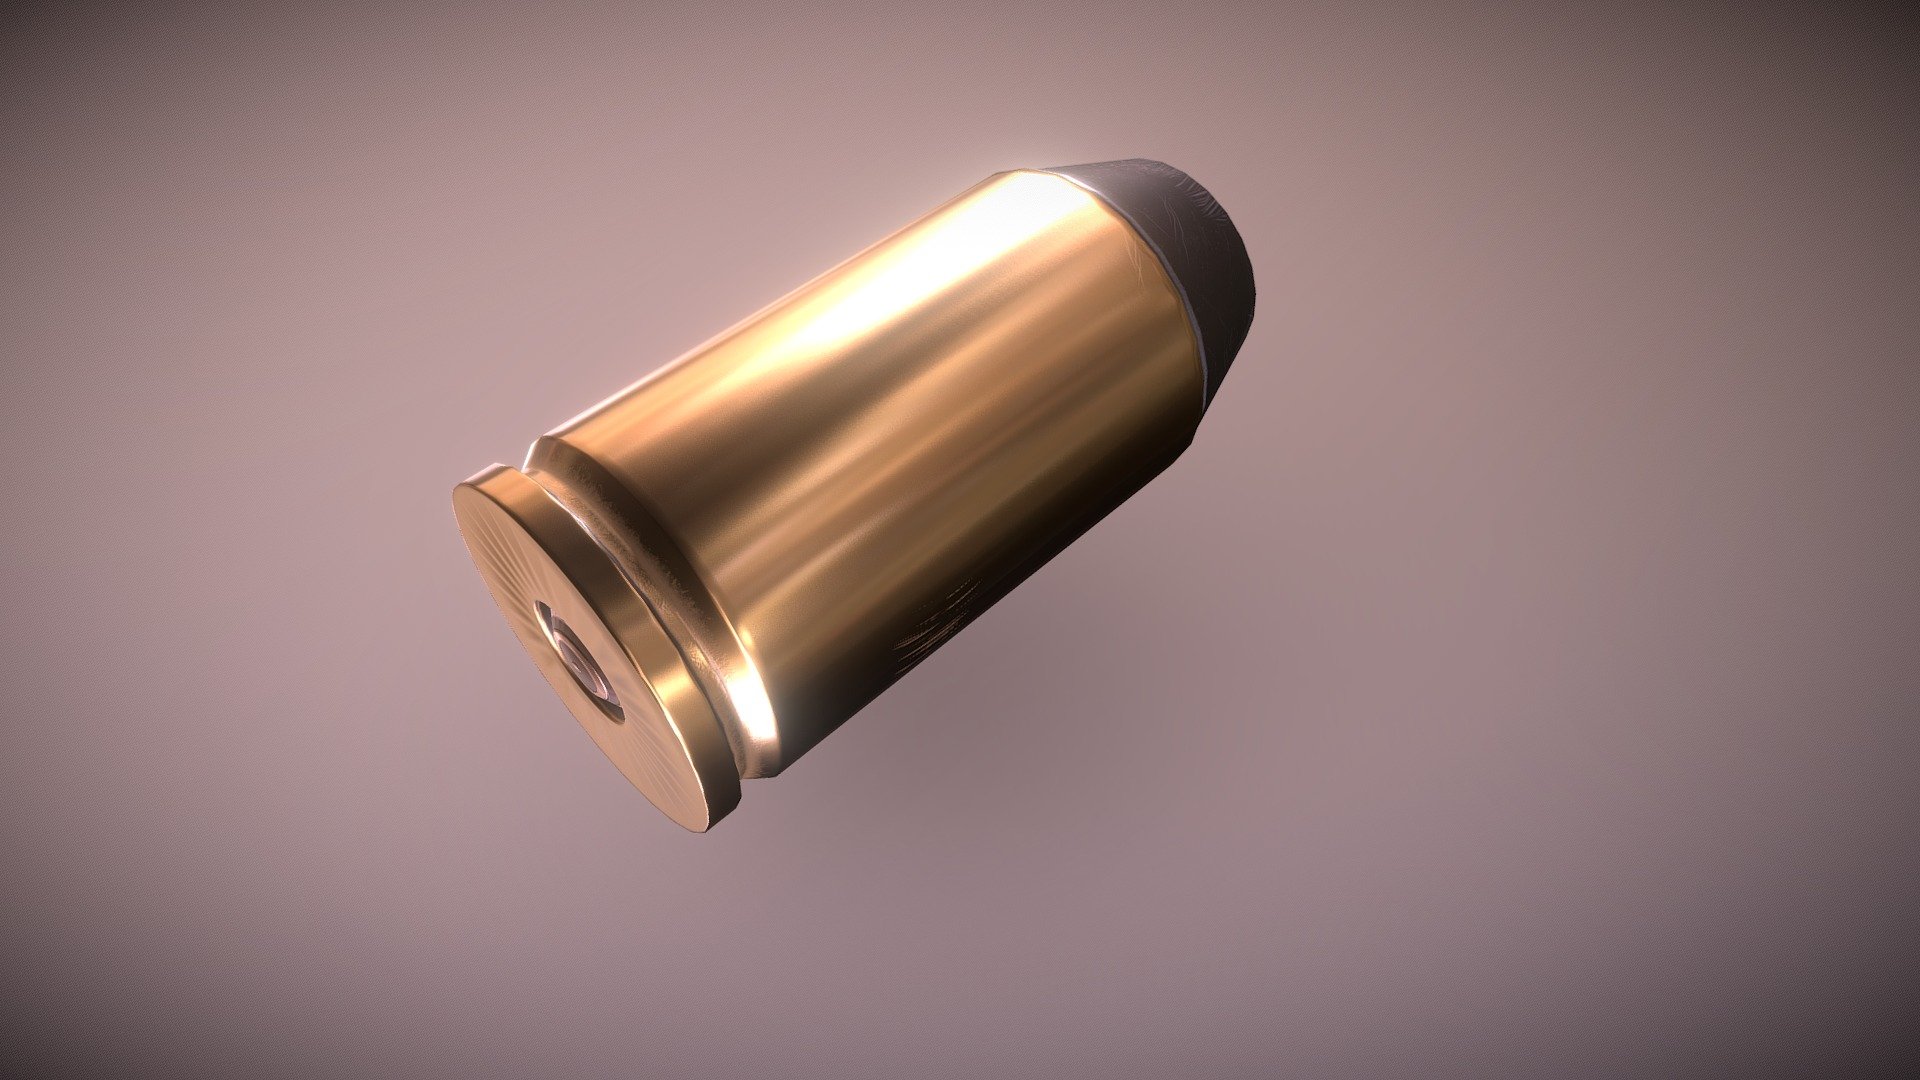 .45 bullet made in Blender and Substance Painter. 30 minutes - .45 Bullet - Download Free 3D model by David DeTogni (@daviddetogni) 3d model